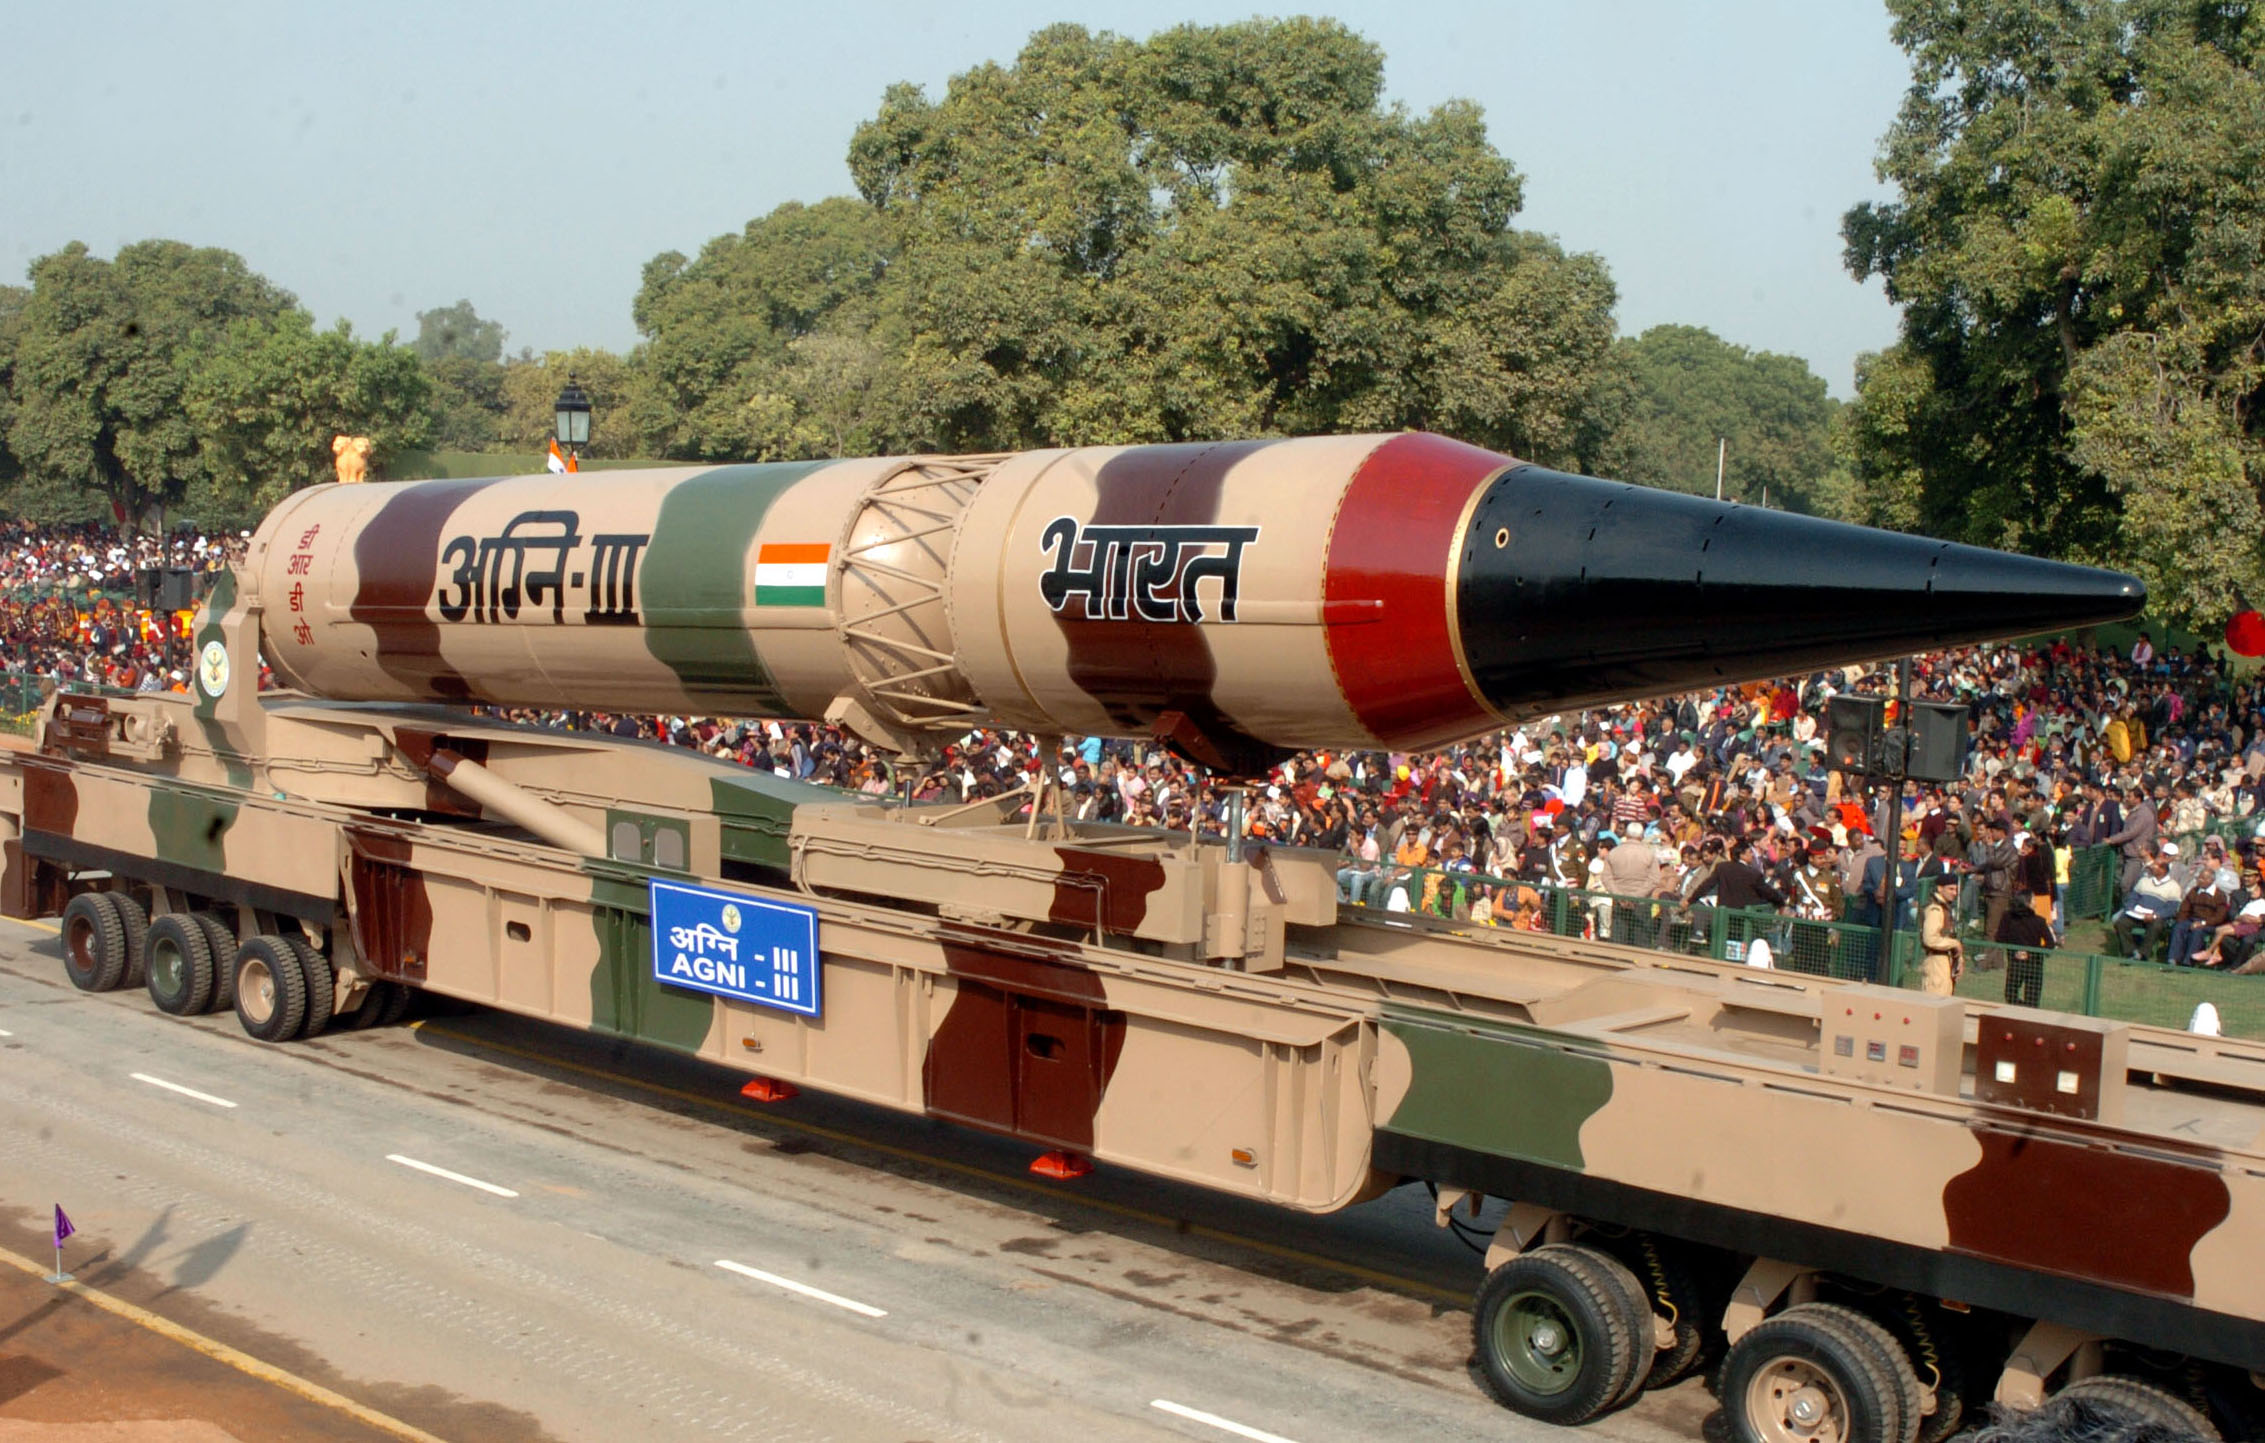  - Ấn Độ phóng thử thành công tên lửa đạn đạo chiến lược